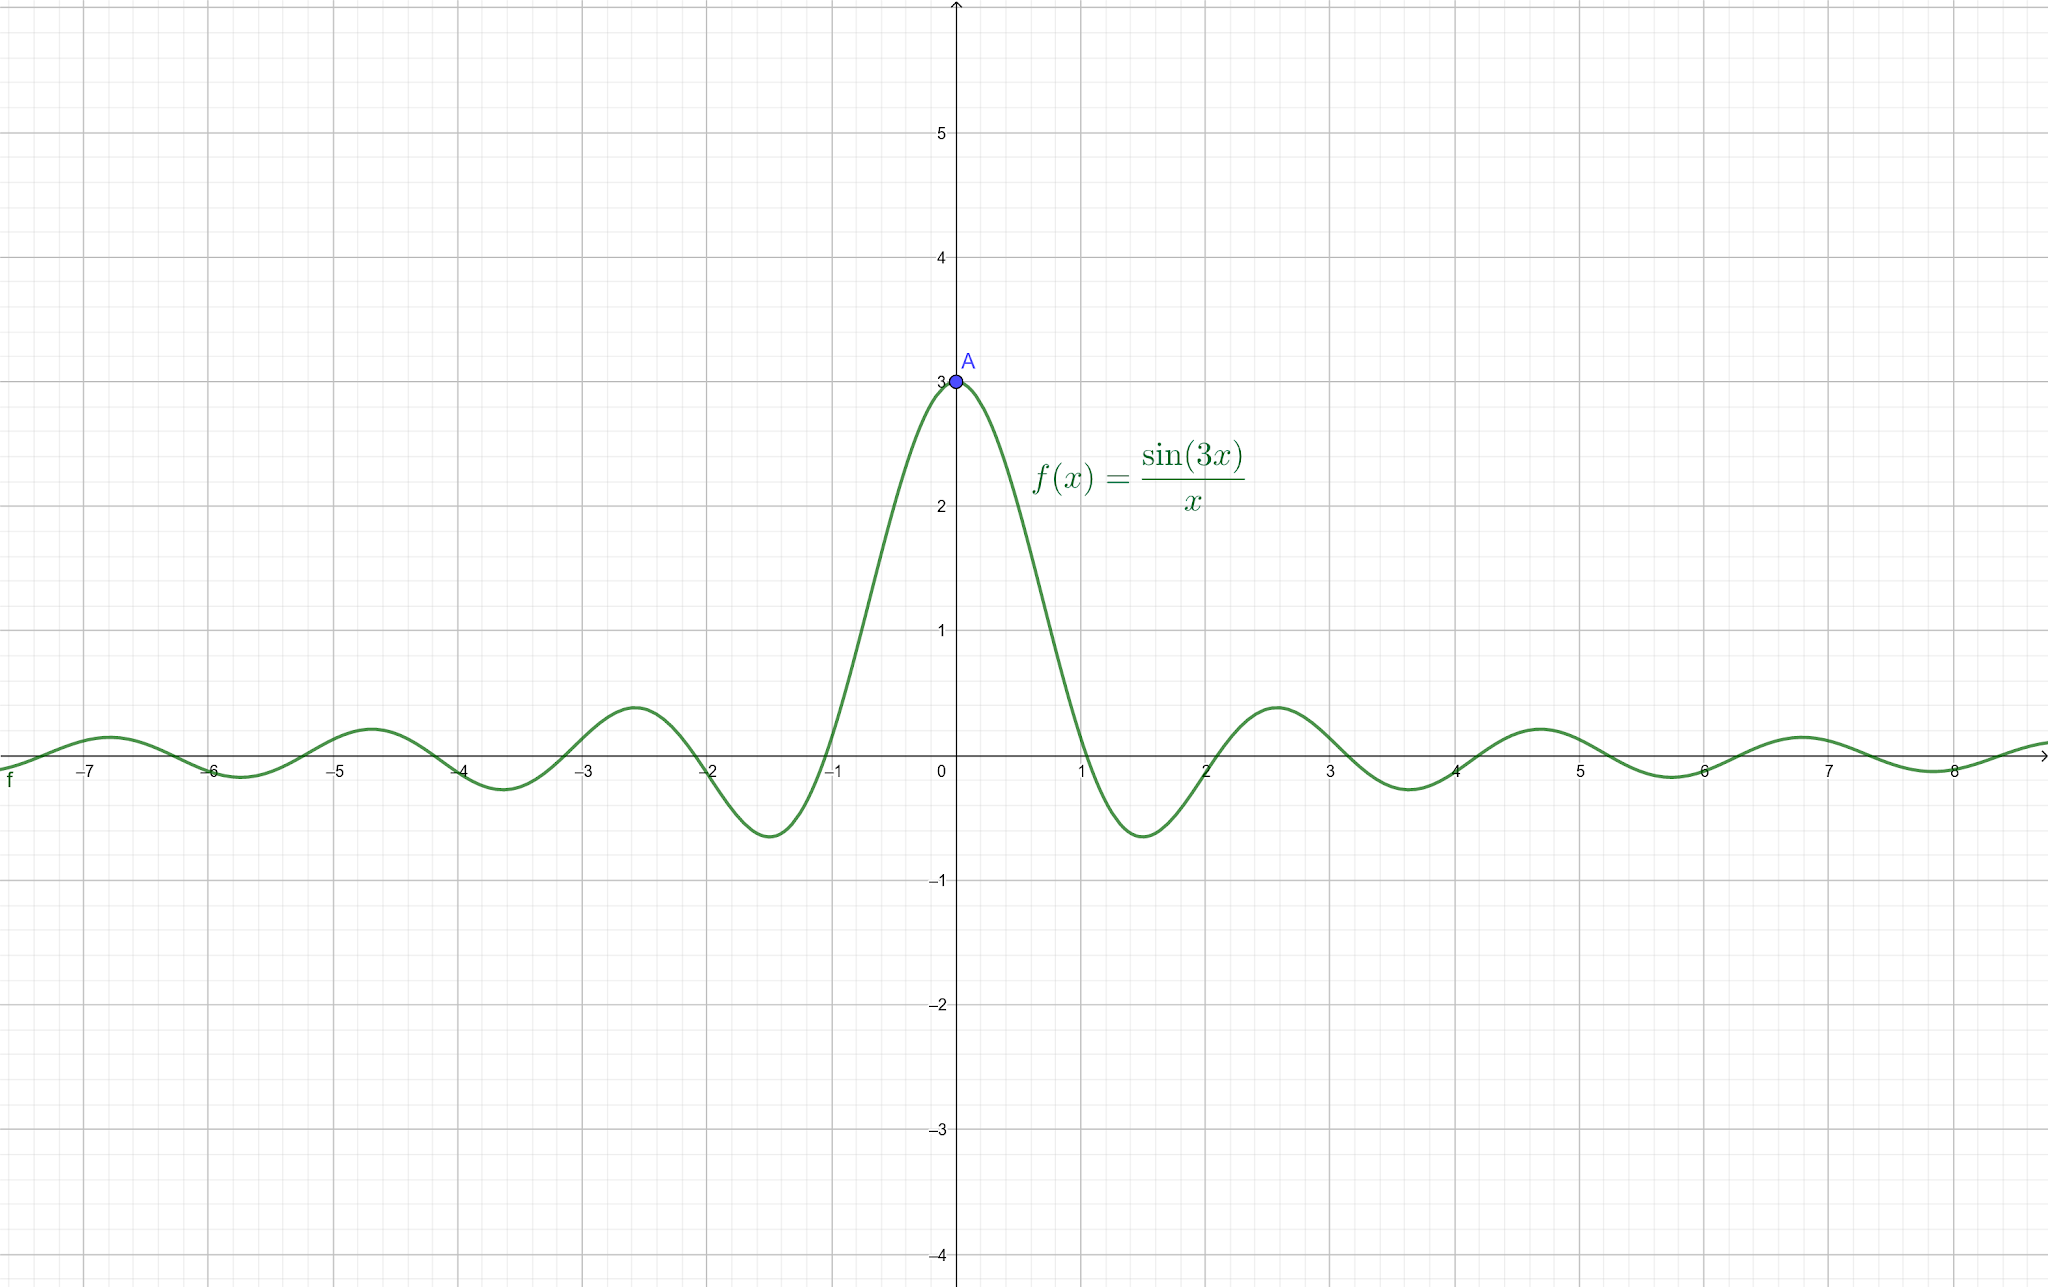 Quando o limite de f(x) tende a 0, f(x) se aproxima de 3.